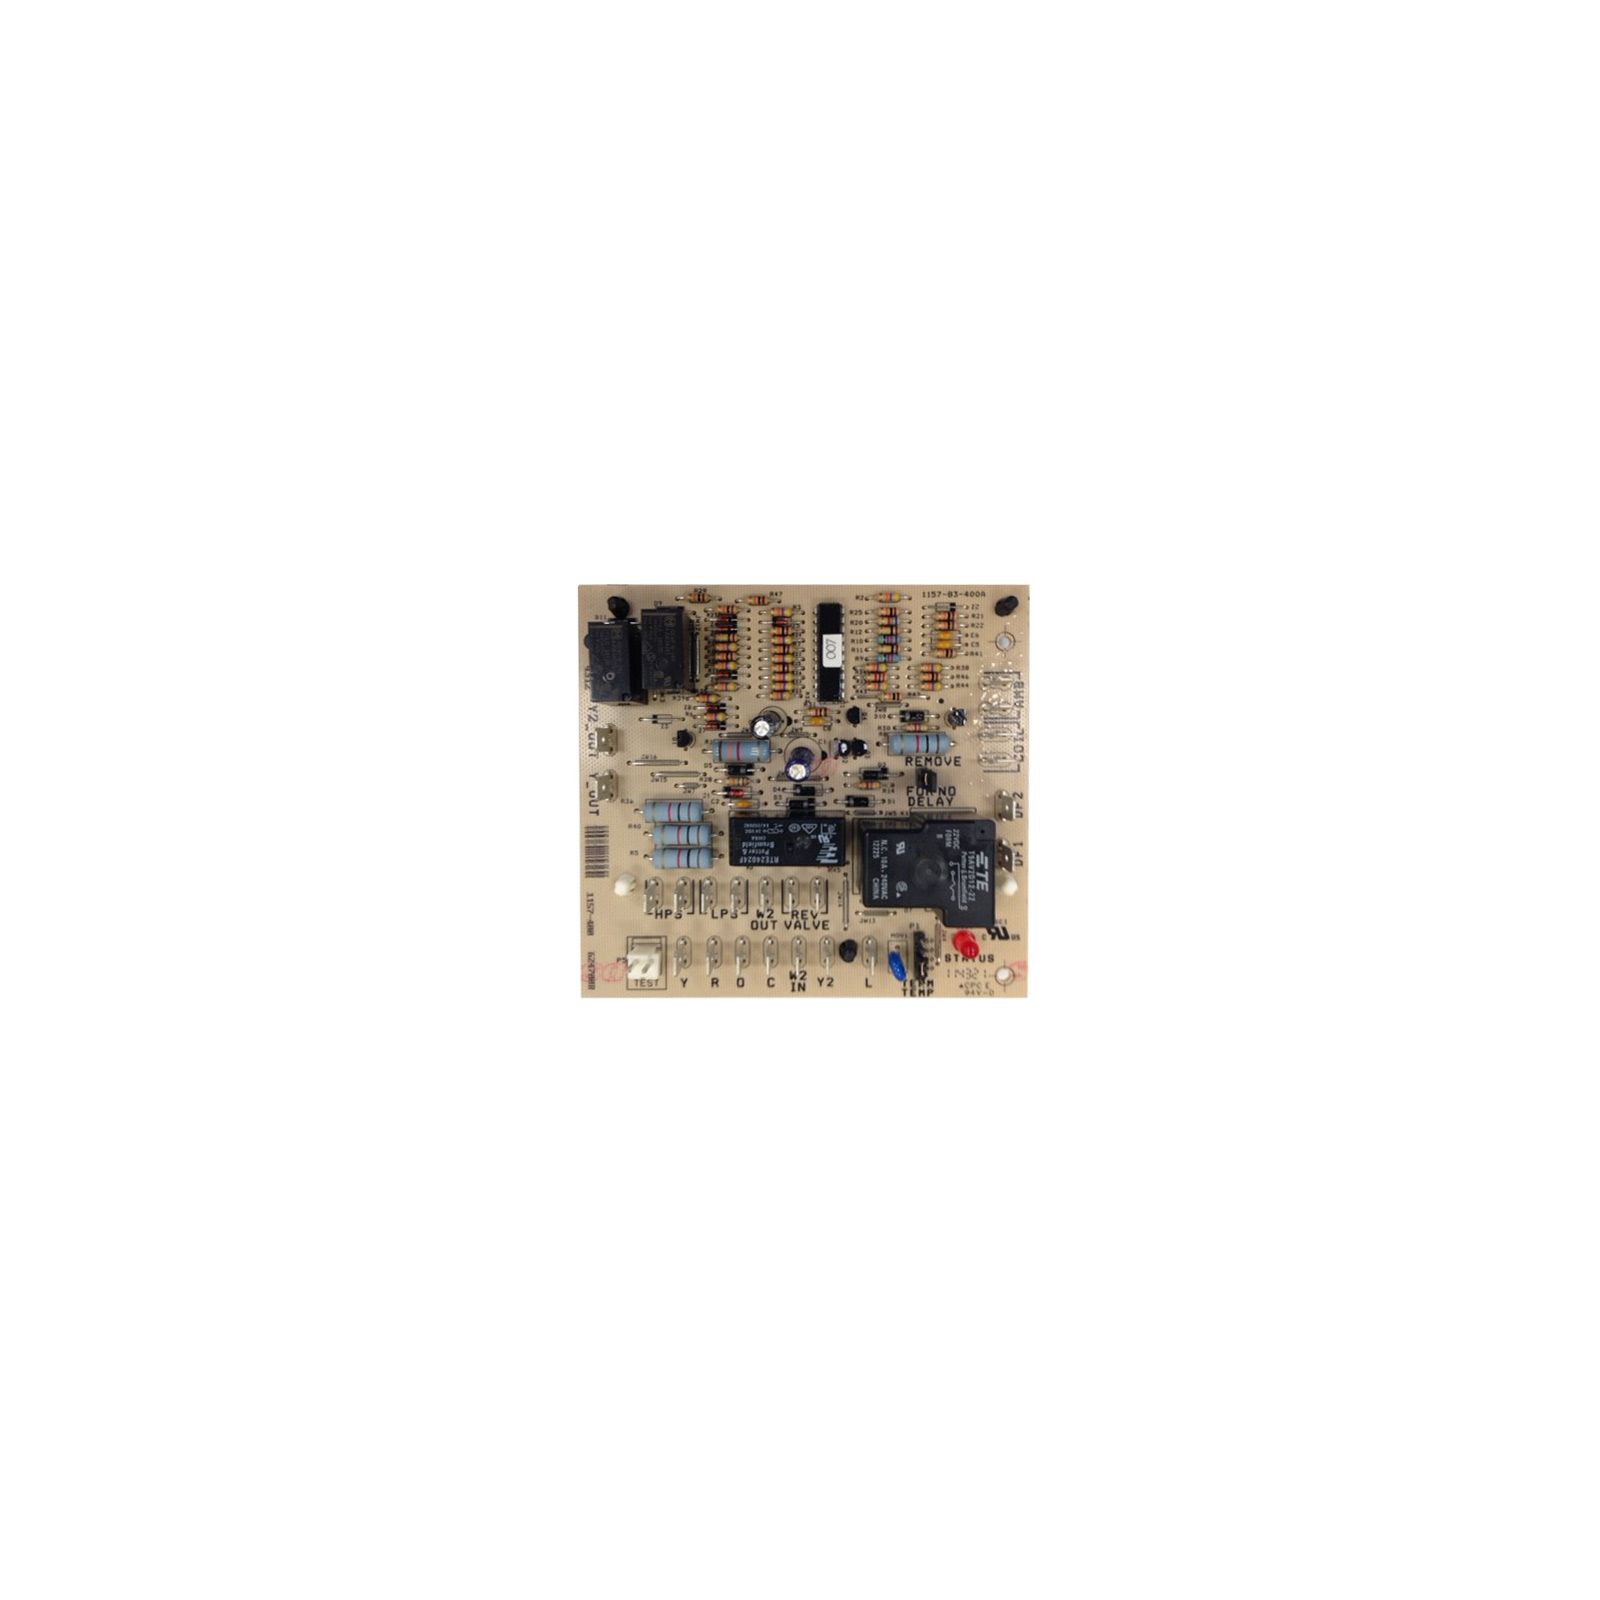 Nortek 920338 - Heat Pump Defrost Control Board